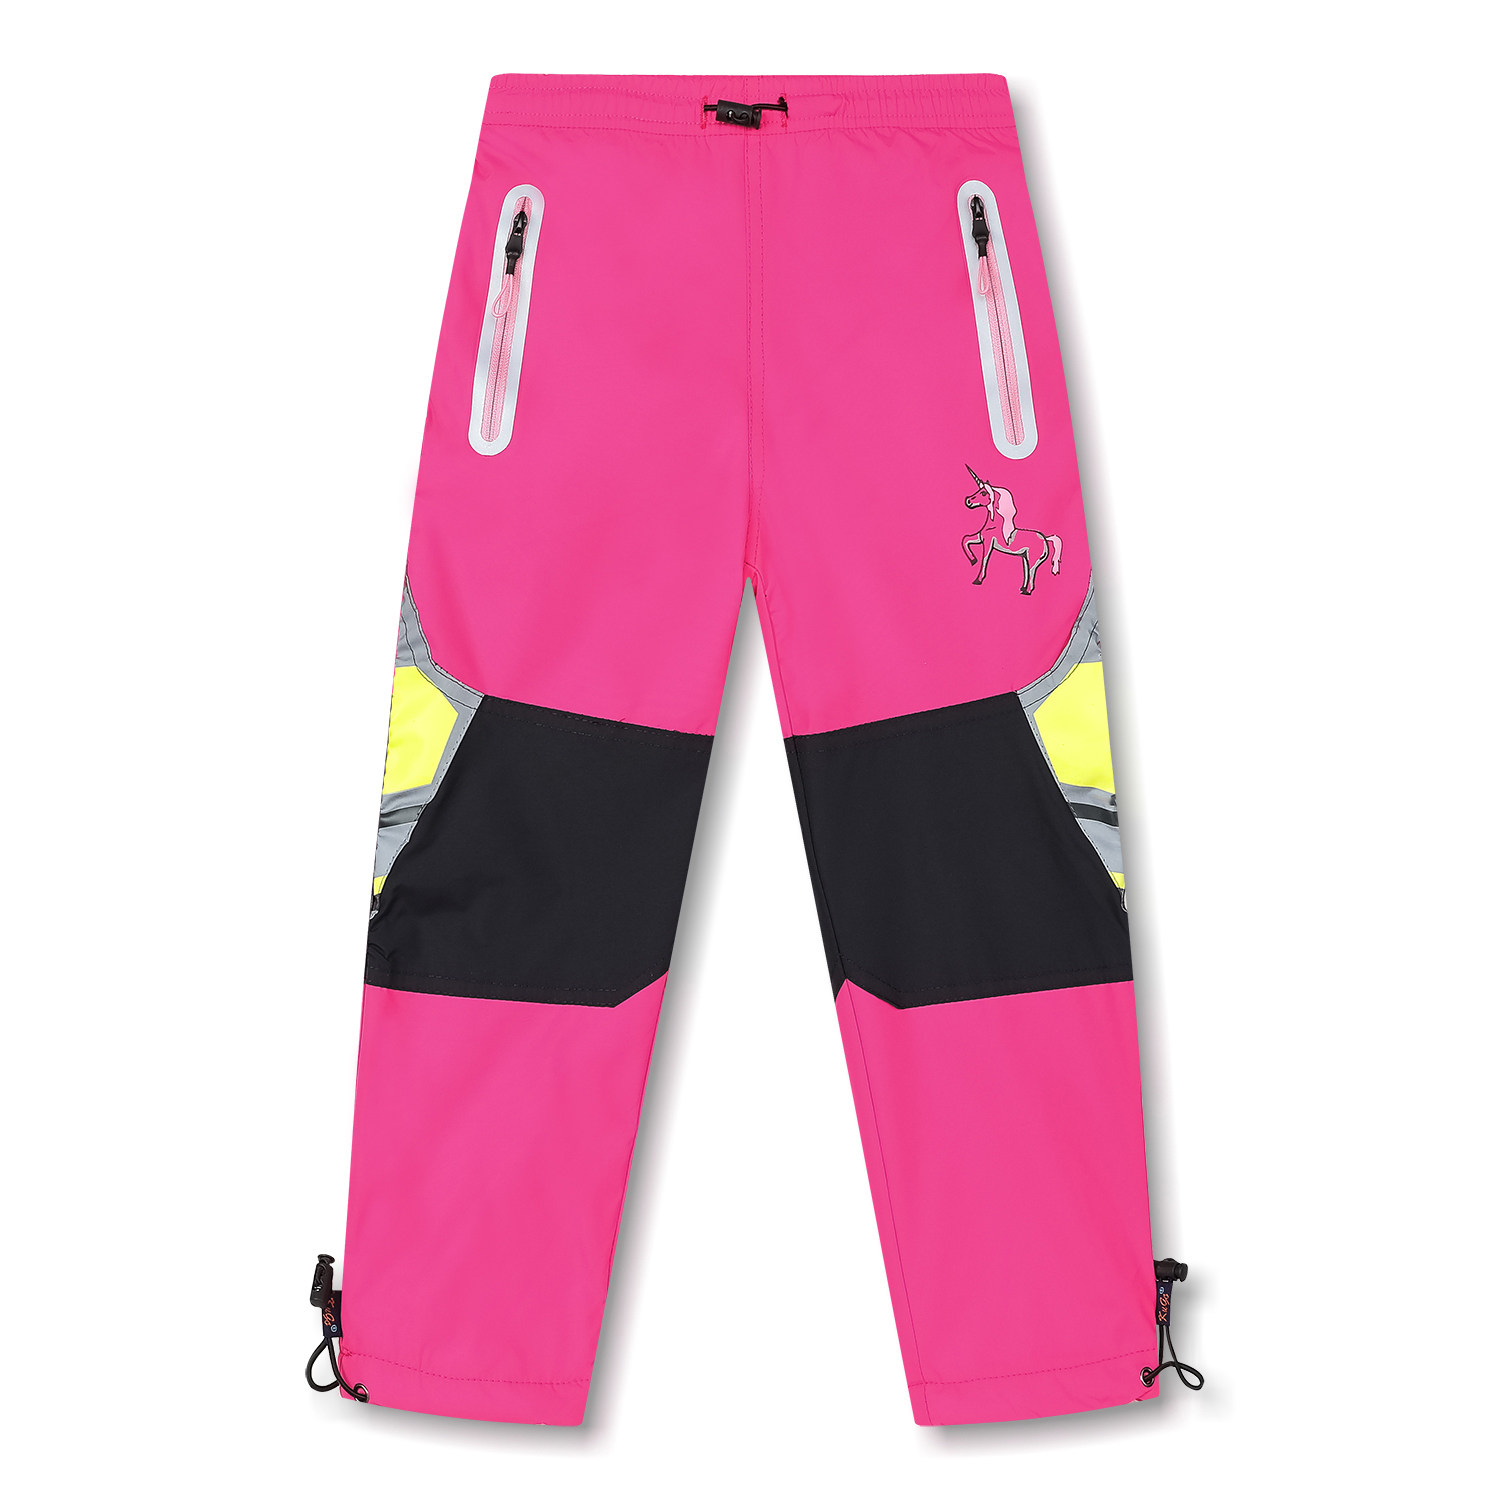 Dívčí šusťákové kalhoty, zateplené - KUGO K6977, růžová Barva: Růžová, Velikost: 98